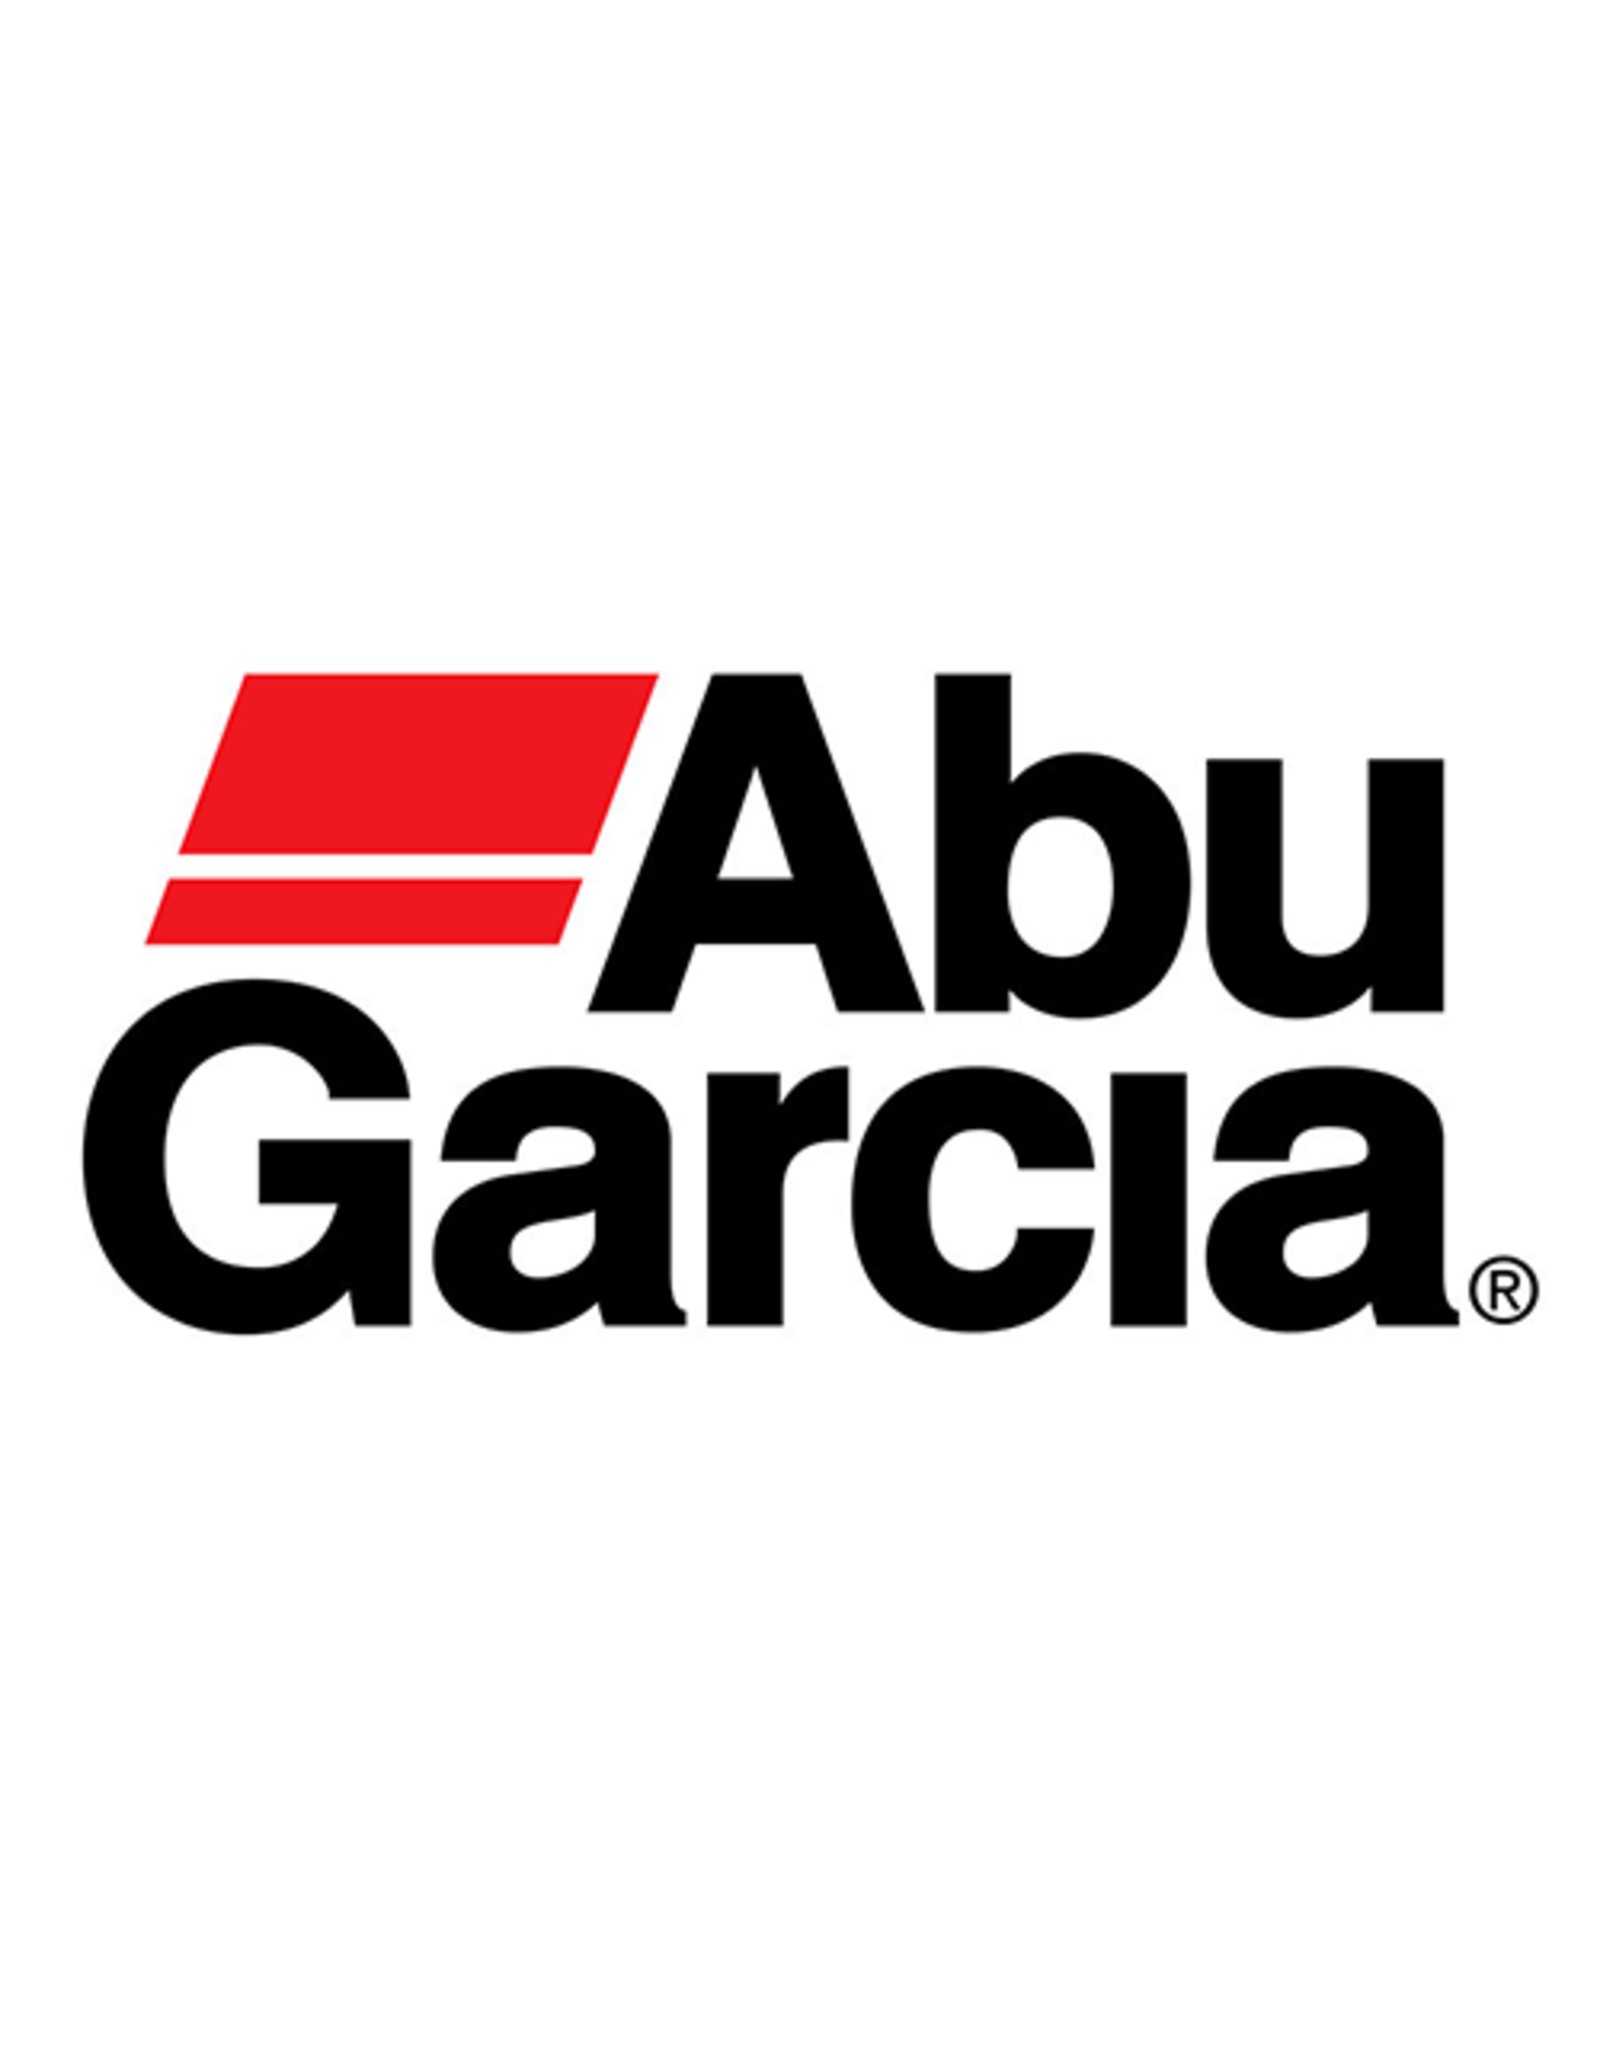 Abu Garcia 1378833  TRANSFER GEAR